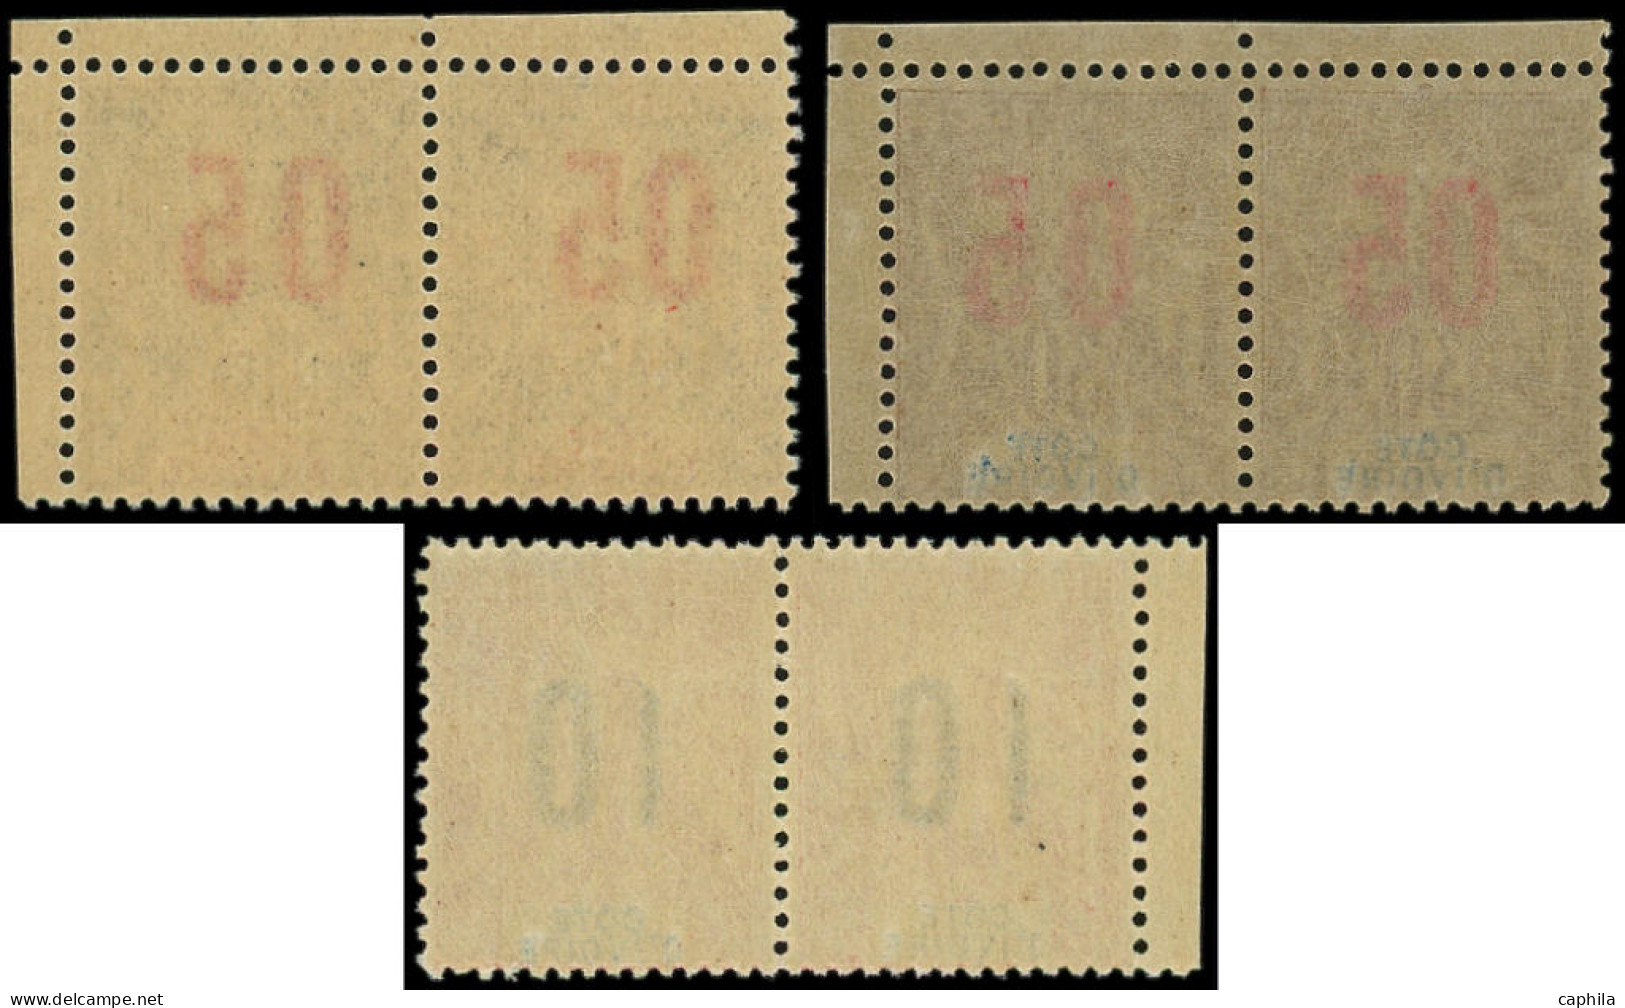 ** COTE D'IVOIRE - Poste - 36Aa/38Aa, 3 Paires Chiffres Espacés Tenant à Normal - Unused Stamps